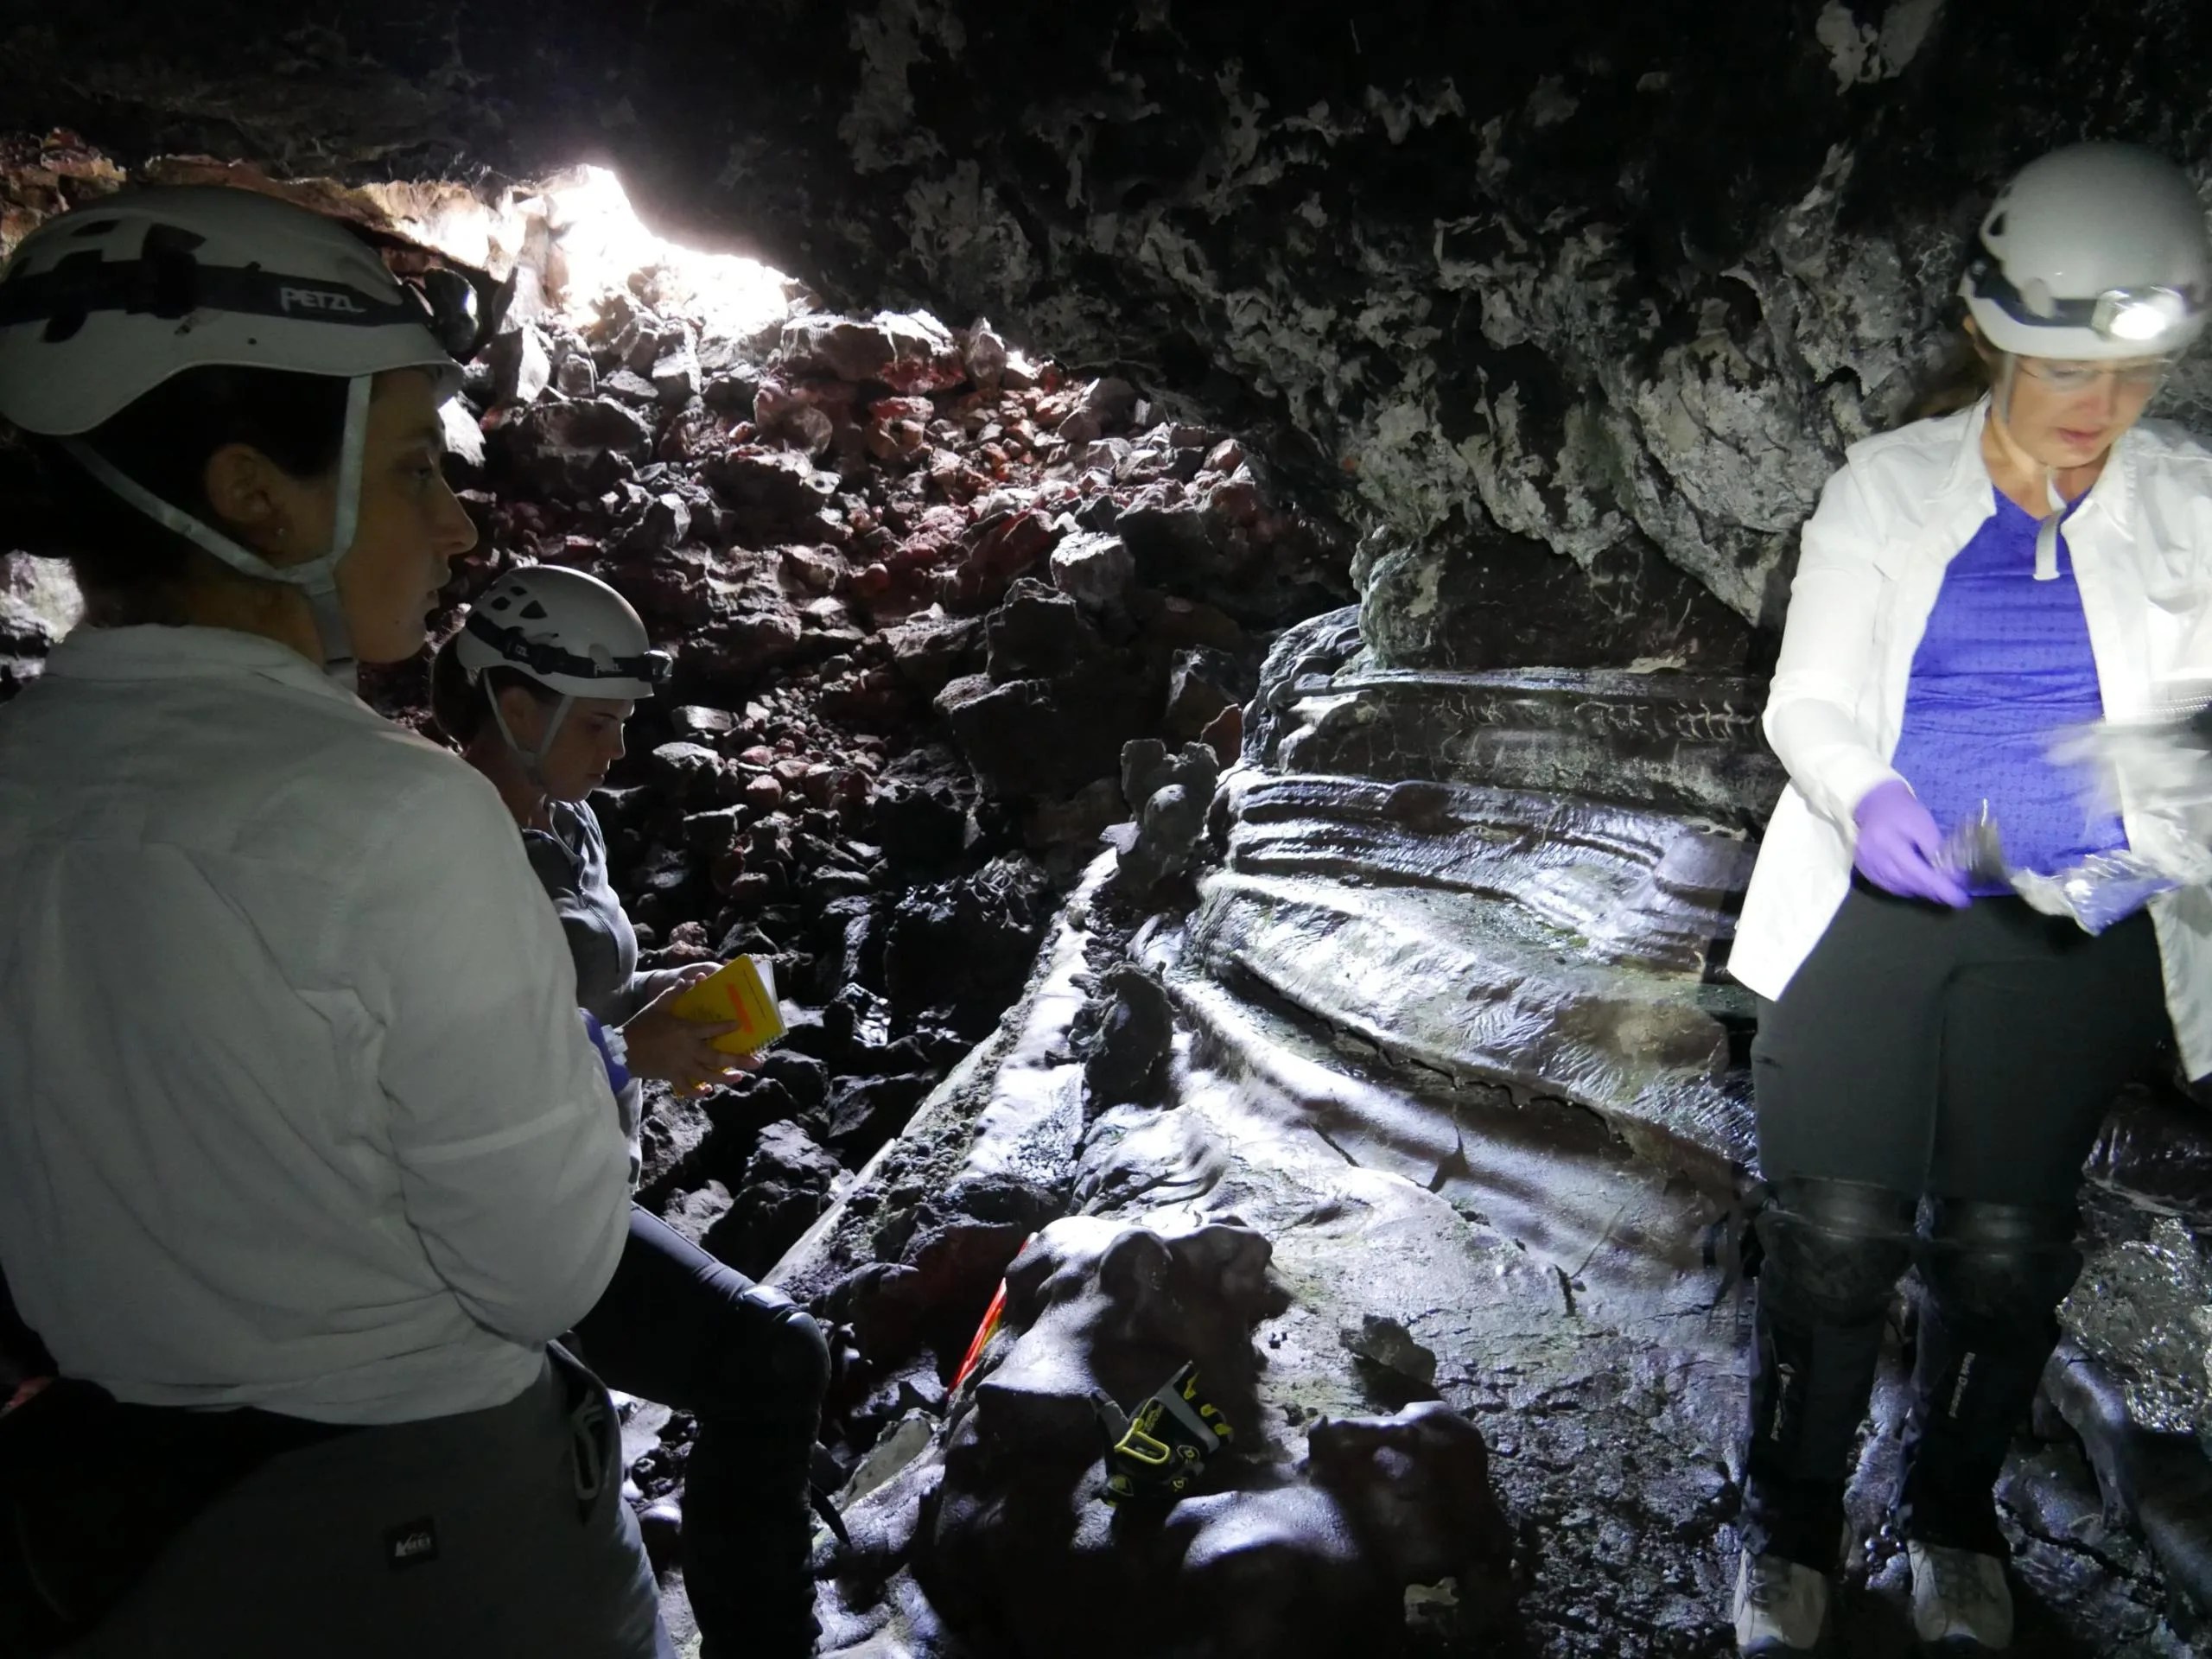 En agosto de 2019, científicos de la NASA y de otras instituciones exploraron un túnel de lava en el volcán Mauna Loa de Hawái. En esta imagen, caminan a través de pilas de escombros de rocas que se forman cuando la lava se enfría rápidamente. Estas rocas contienen vidrio que se pega a los pantalones, como un velcro afilado.